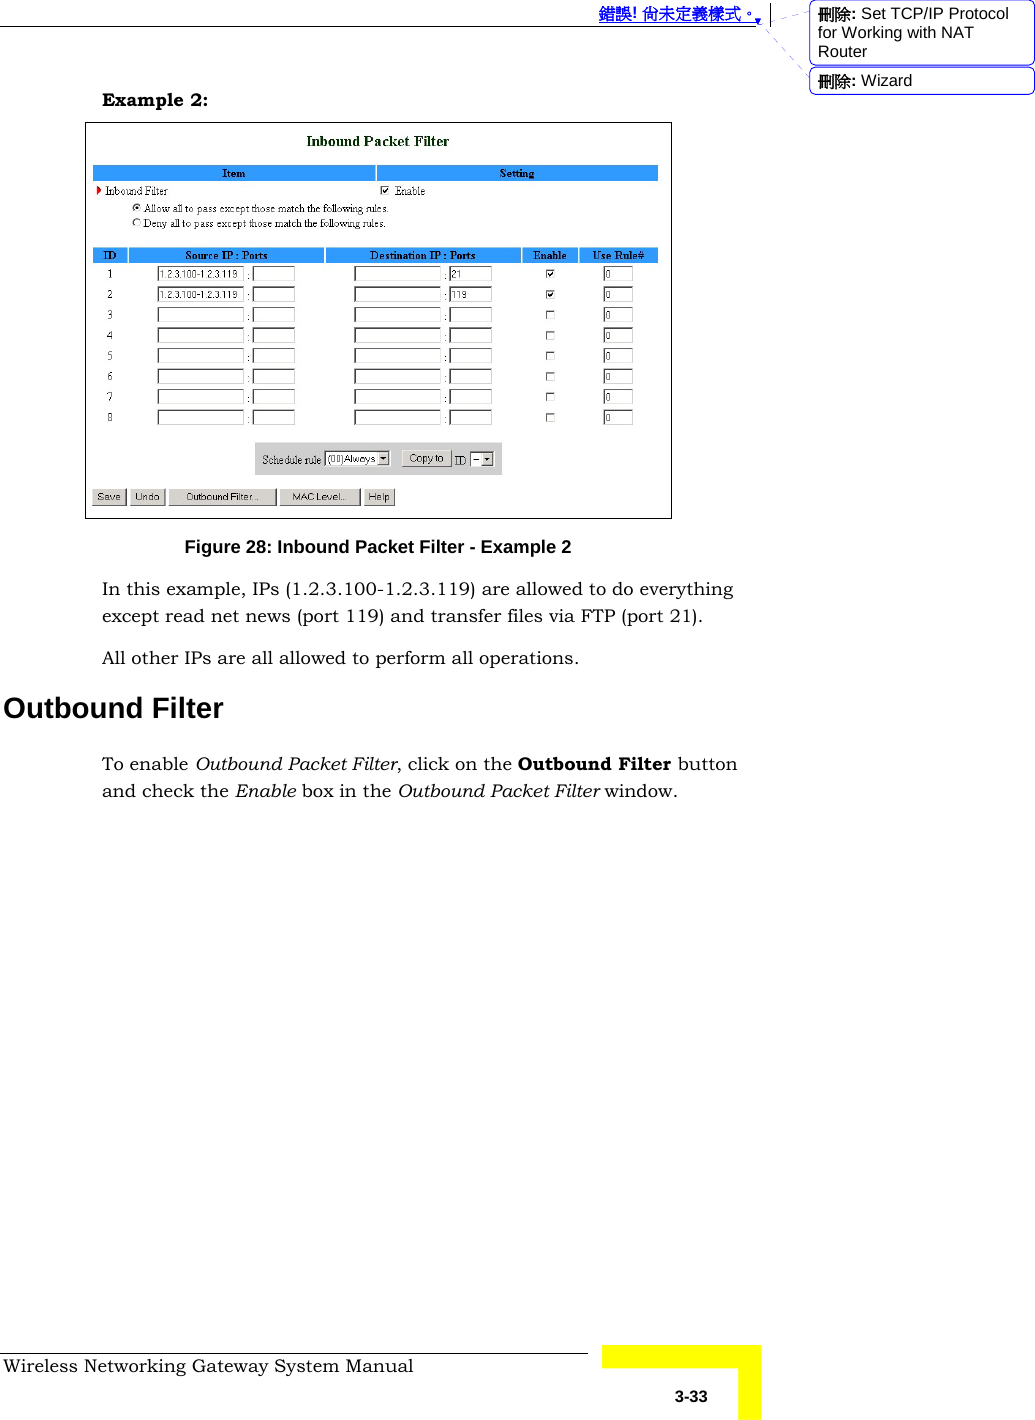  錯誤! 尚未定義樣式。 Wireless Networking Gateway System Manual   3-33 Example 2:  Figure 28: Inbound Packet Filter - Example 2 In this example, IPs (1.2.3.100-1.2.3.119) are allowed to do everything except read net news (port 119) and transfer files via FTP (port 21). All other IPs are all allowed to perform all operations. Outbound Filter To enable Outbound Packet Filter, click on the Outbound Filter button and check the Enable box in the Outbound Packet Filter window. 刪除: Set TCP/IP Protocol for Working with NAT Router刪除: Wizard